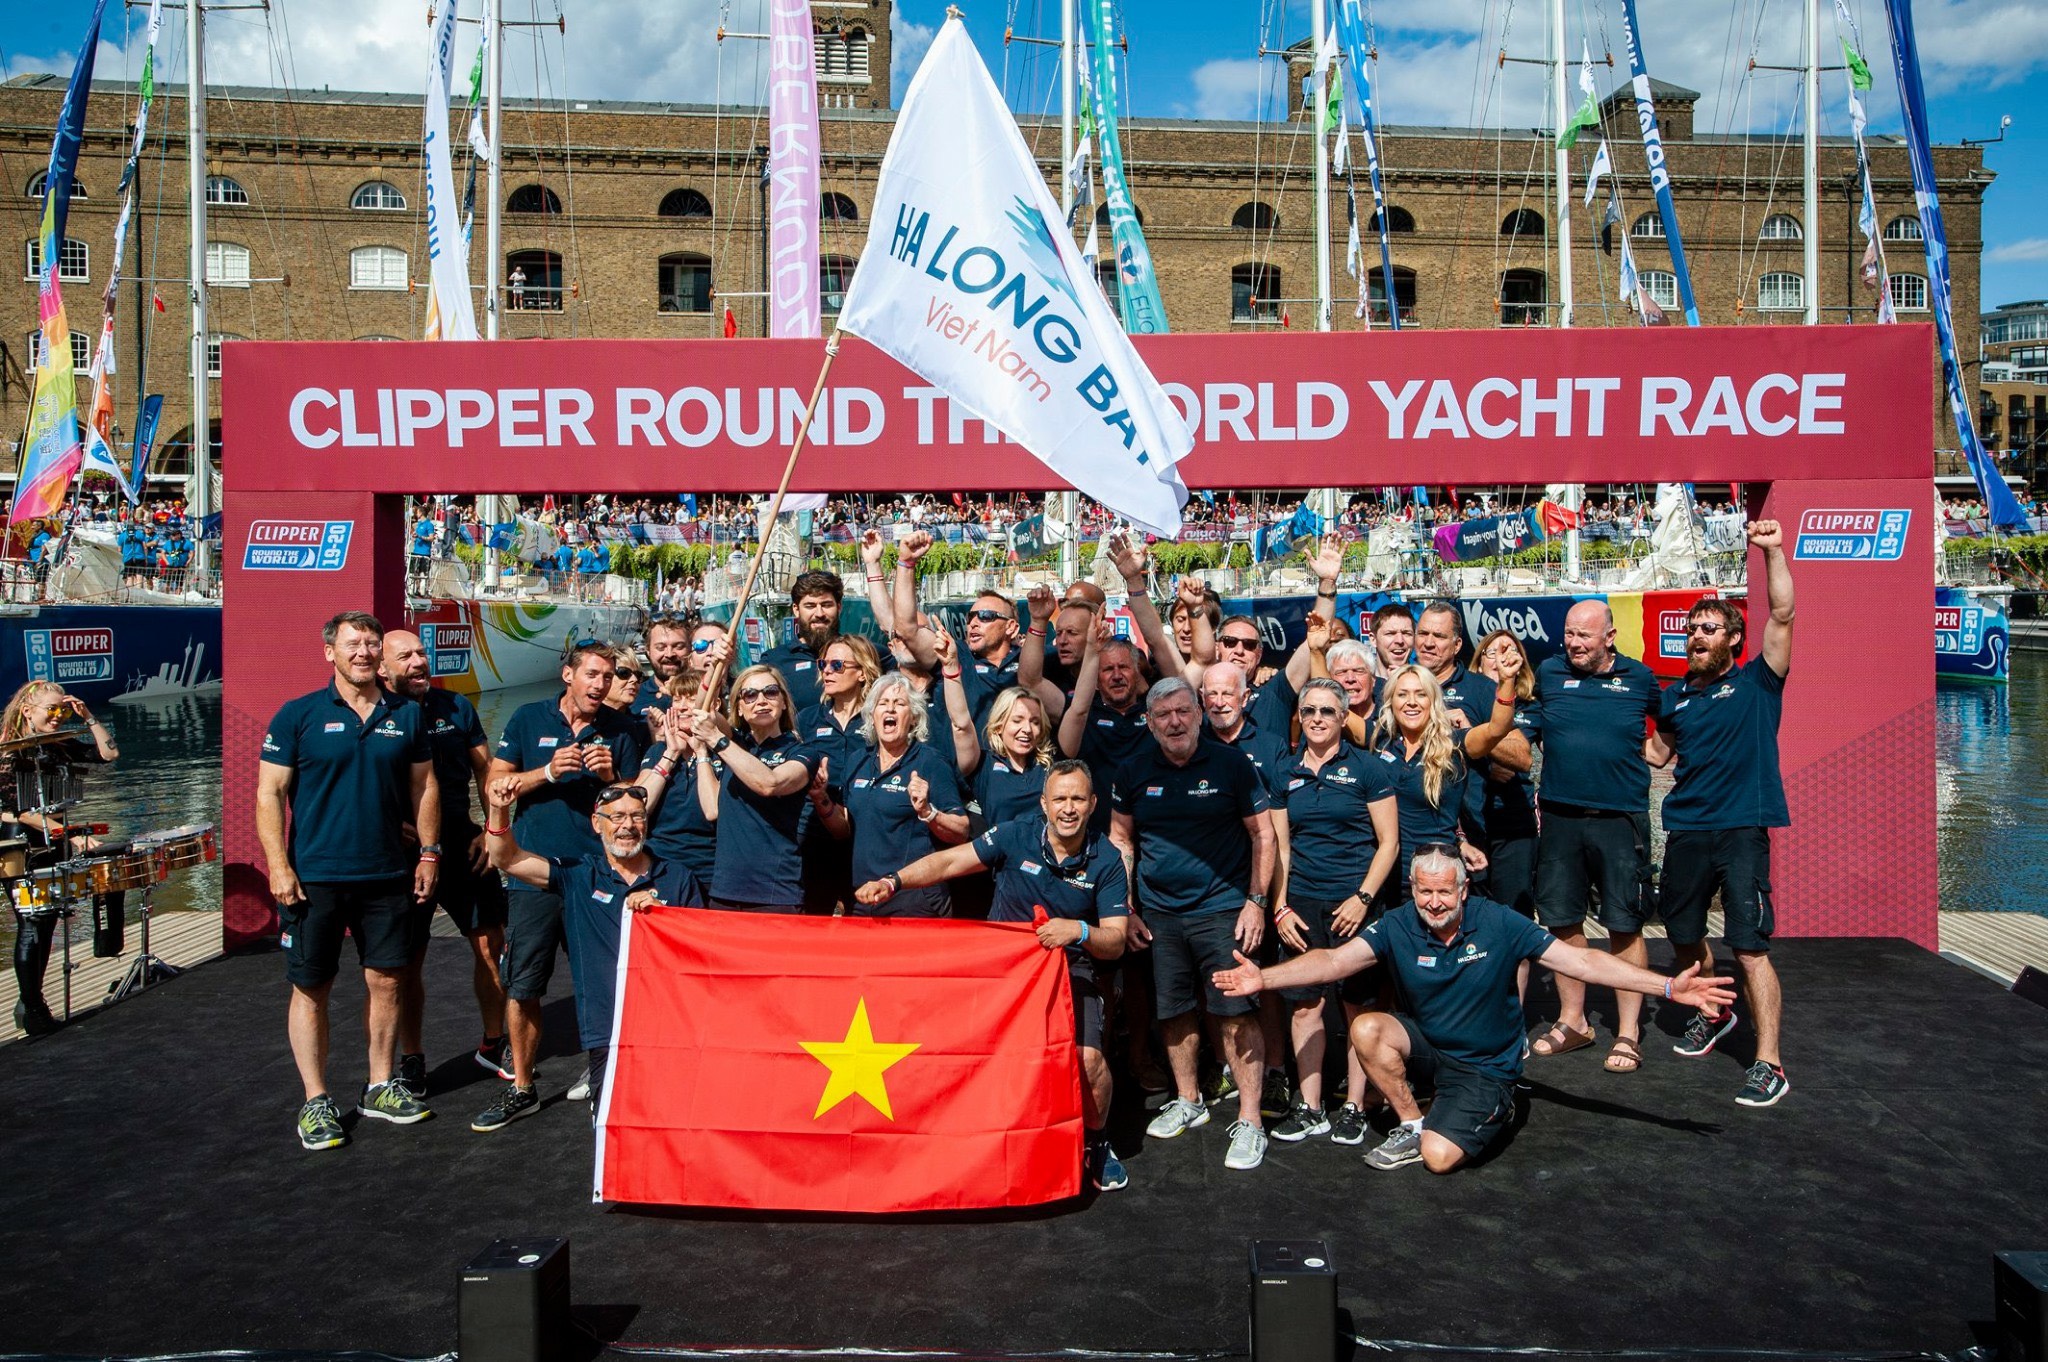 Thủy thủ đoàn thuyền HaLong Bay – Viet Nam đại diện của Quảng Ninh tại cuộc đua Thuyền buồm vòng quanh thế giới Clipper Race 2019 – 2020